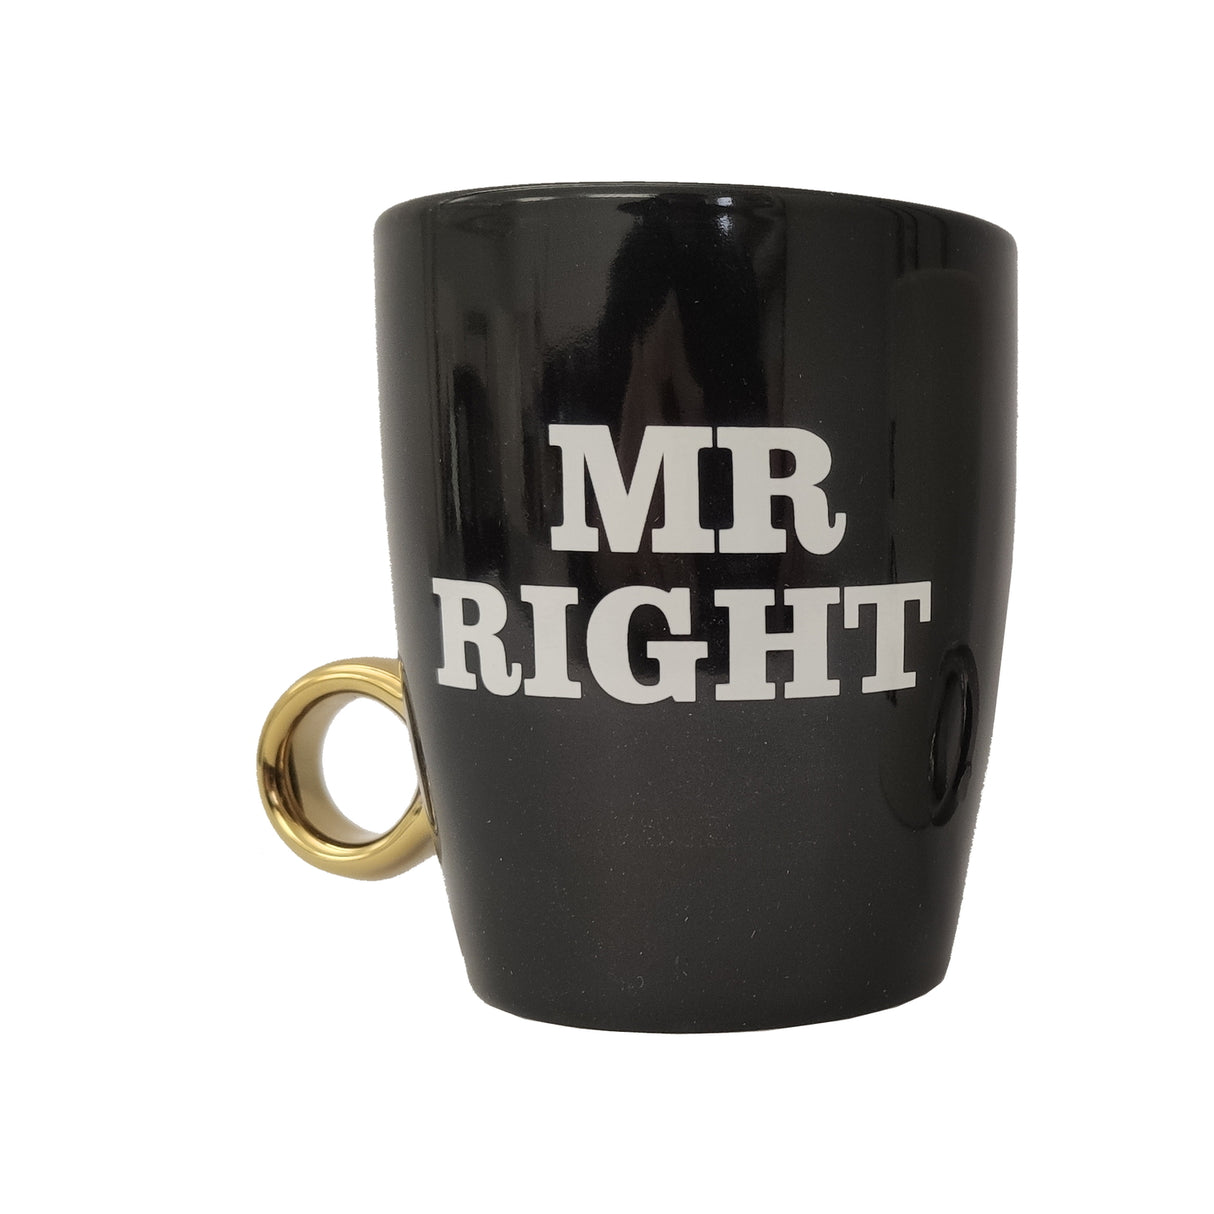 Mr. Right und Mrs. always Right Kaffeebecher mit Ring